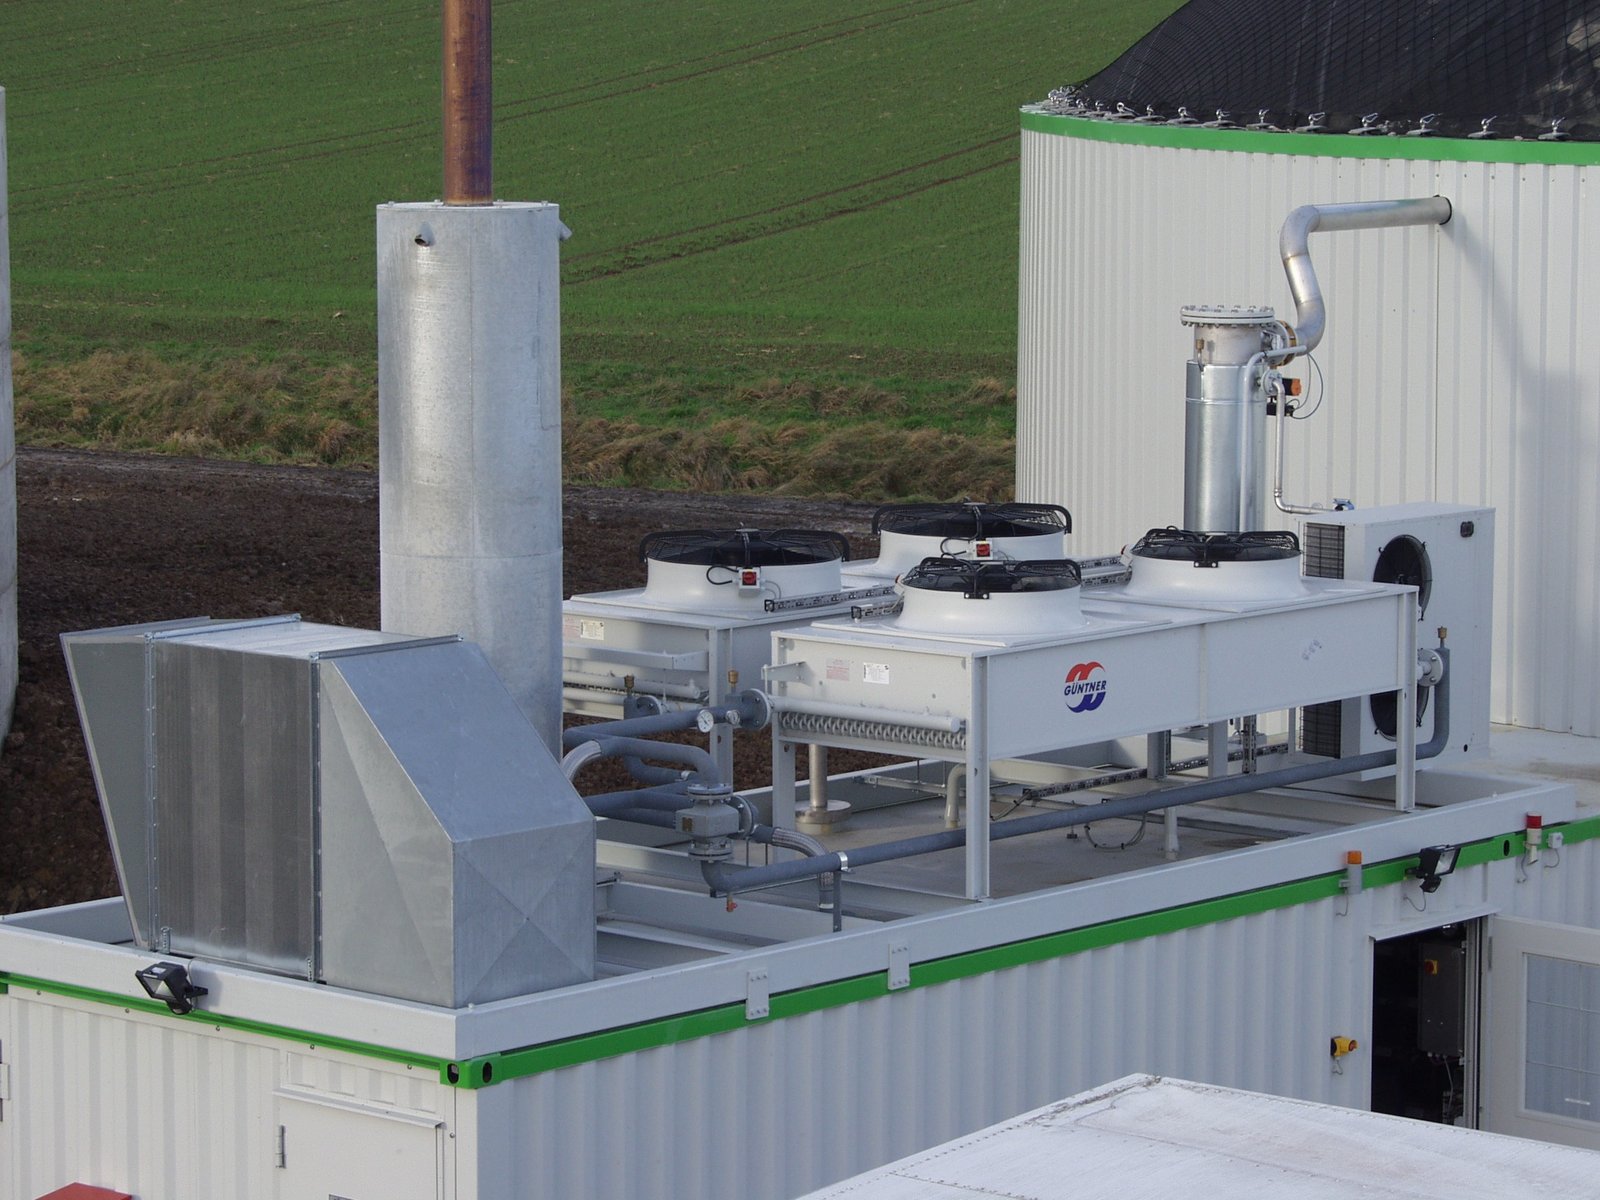 Notkühler auf dem Dach des BHKW einer Biogasanlage, Klick führt zu Großansicht im neuen Fenster